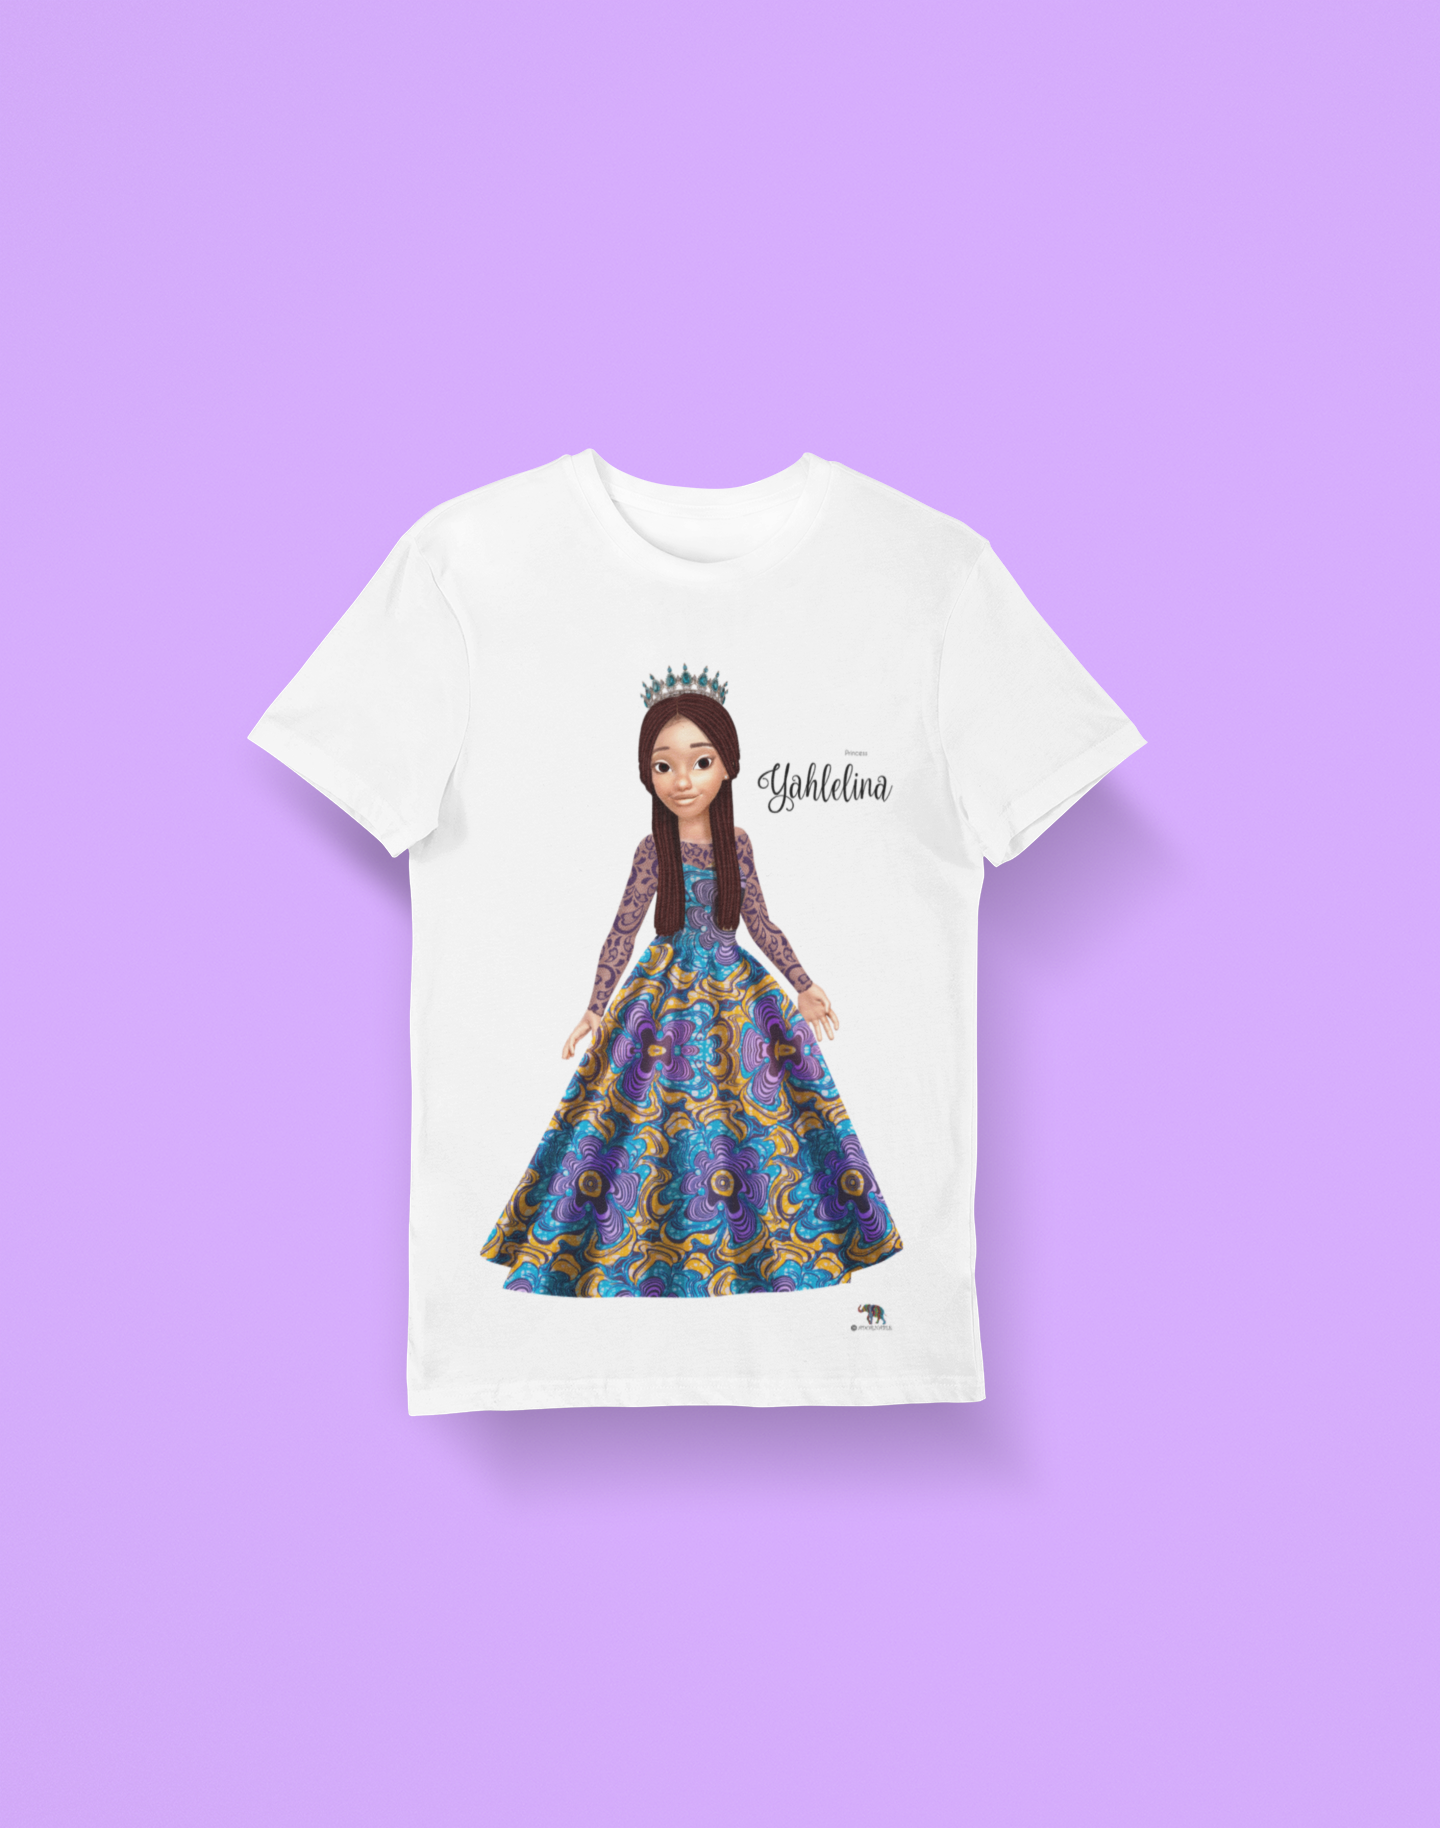 Princess Yahlelina Short Sleeve t-shirt